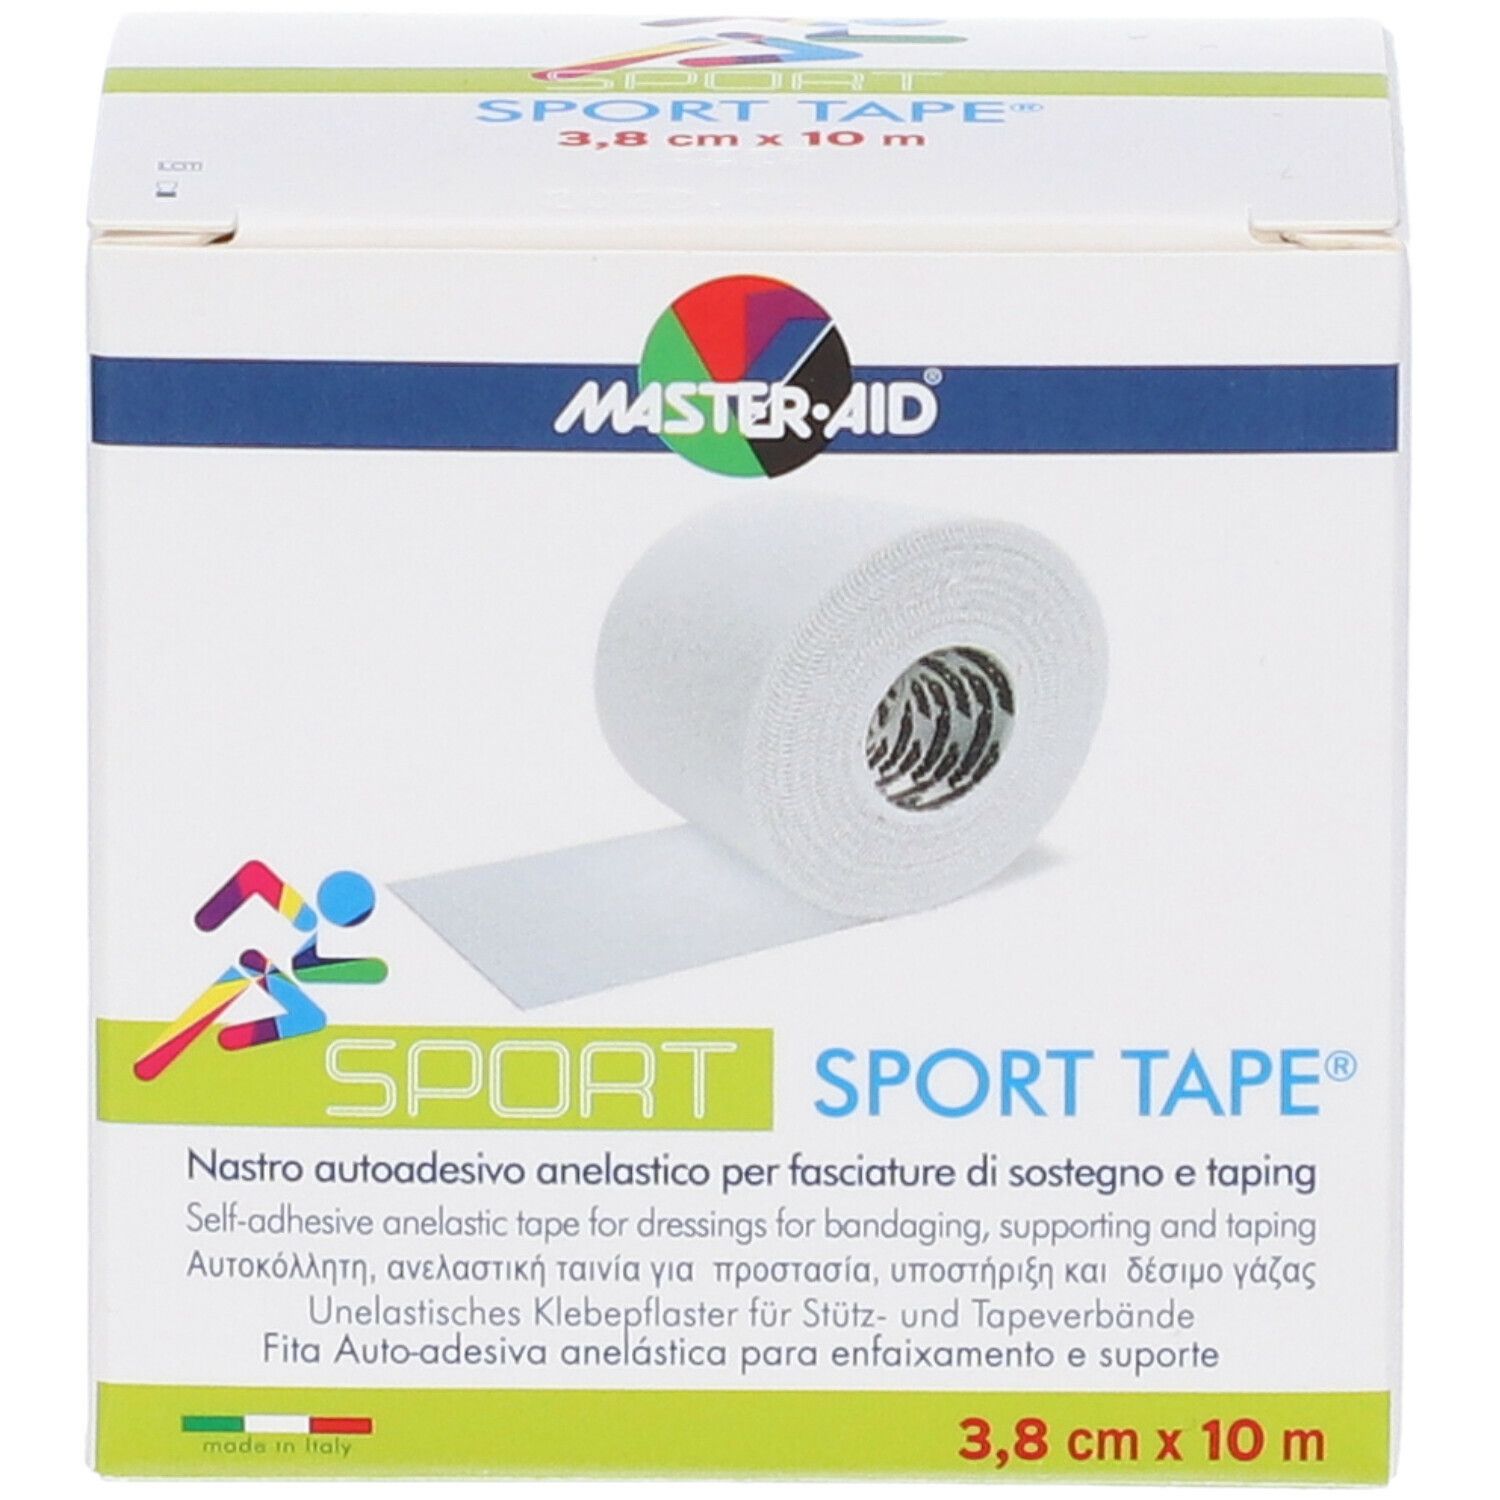 Master•aid Sport Sport Tape 1 pz